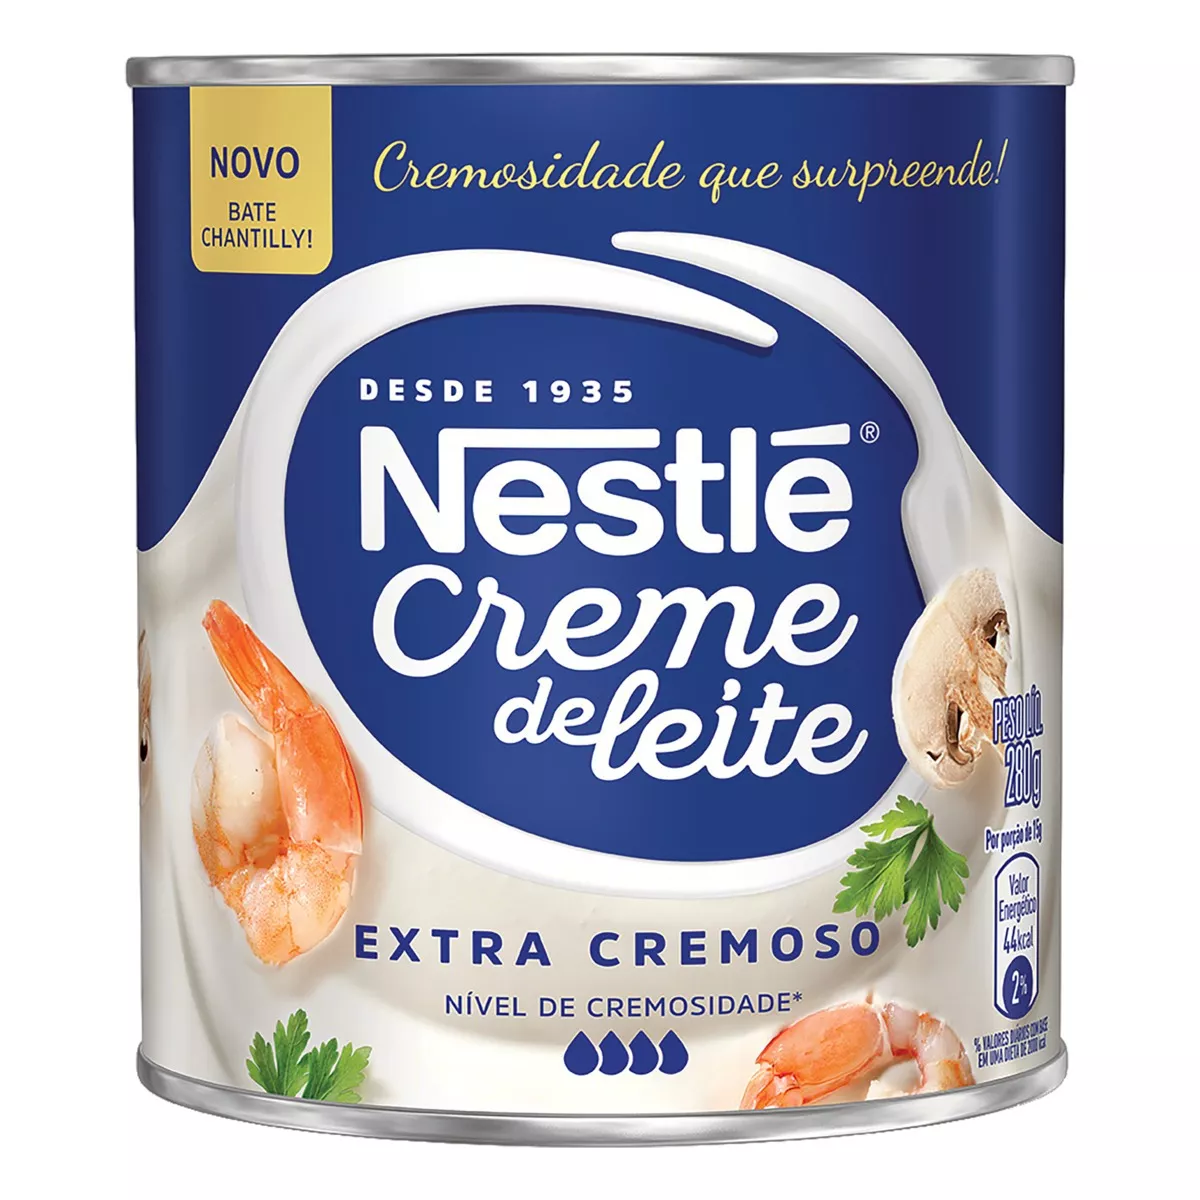 Creme De Leite Esterilizado Extra Cremoso Homogeneizado Bate Chantilly Nestlé Lata 280g Nestlé